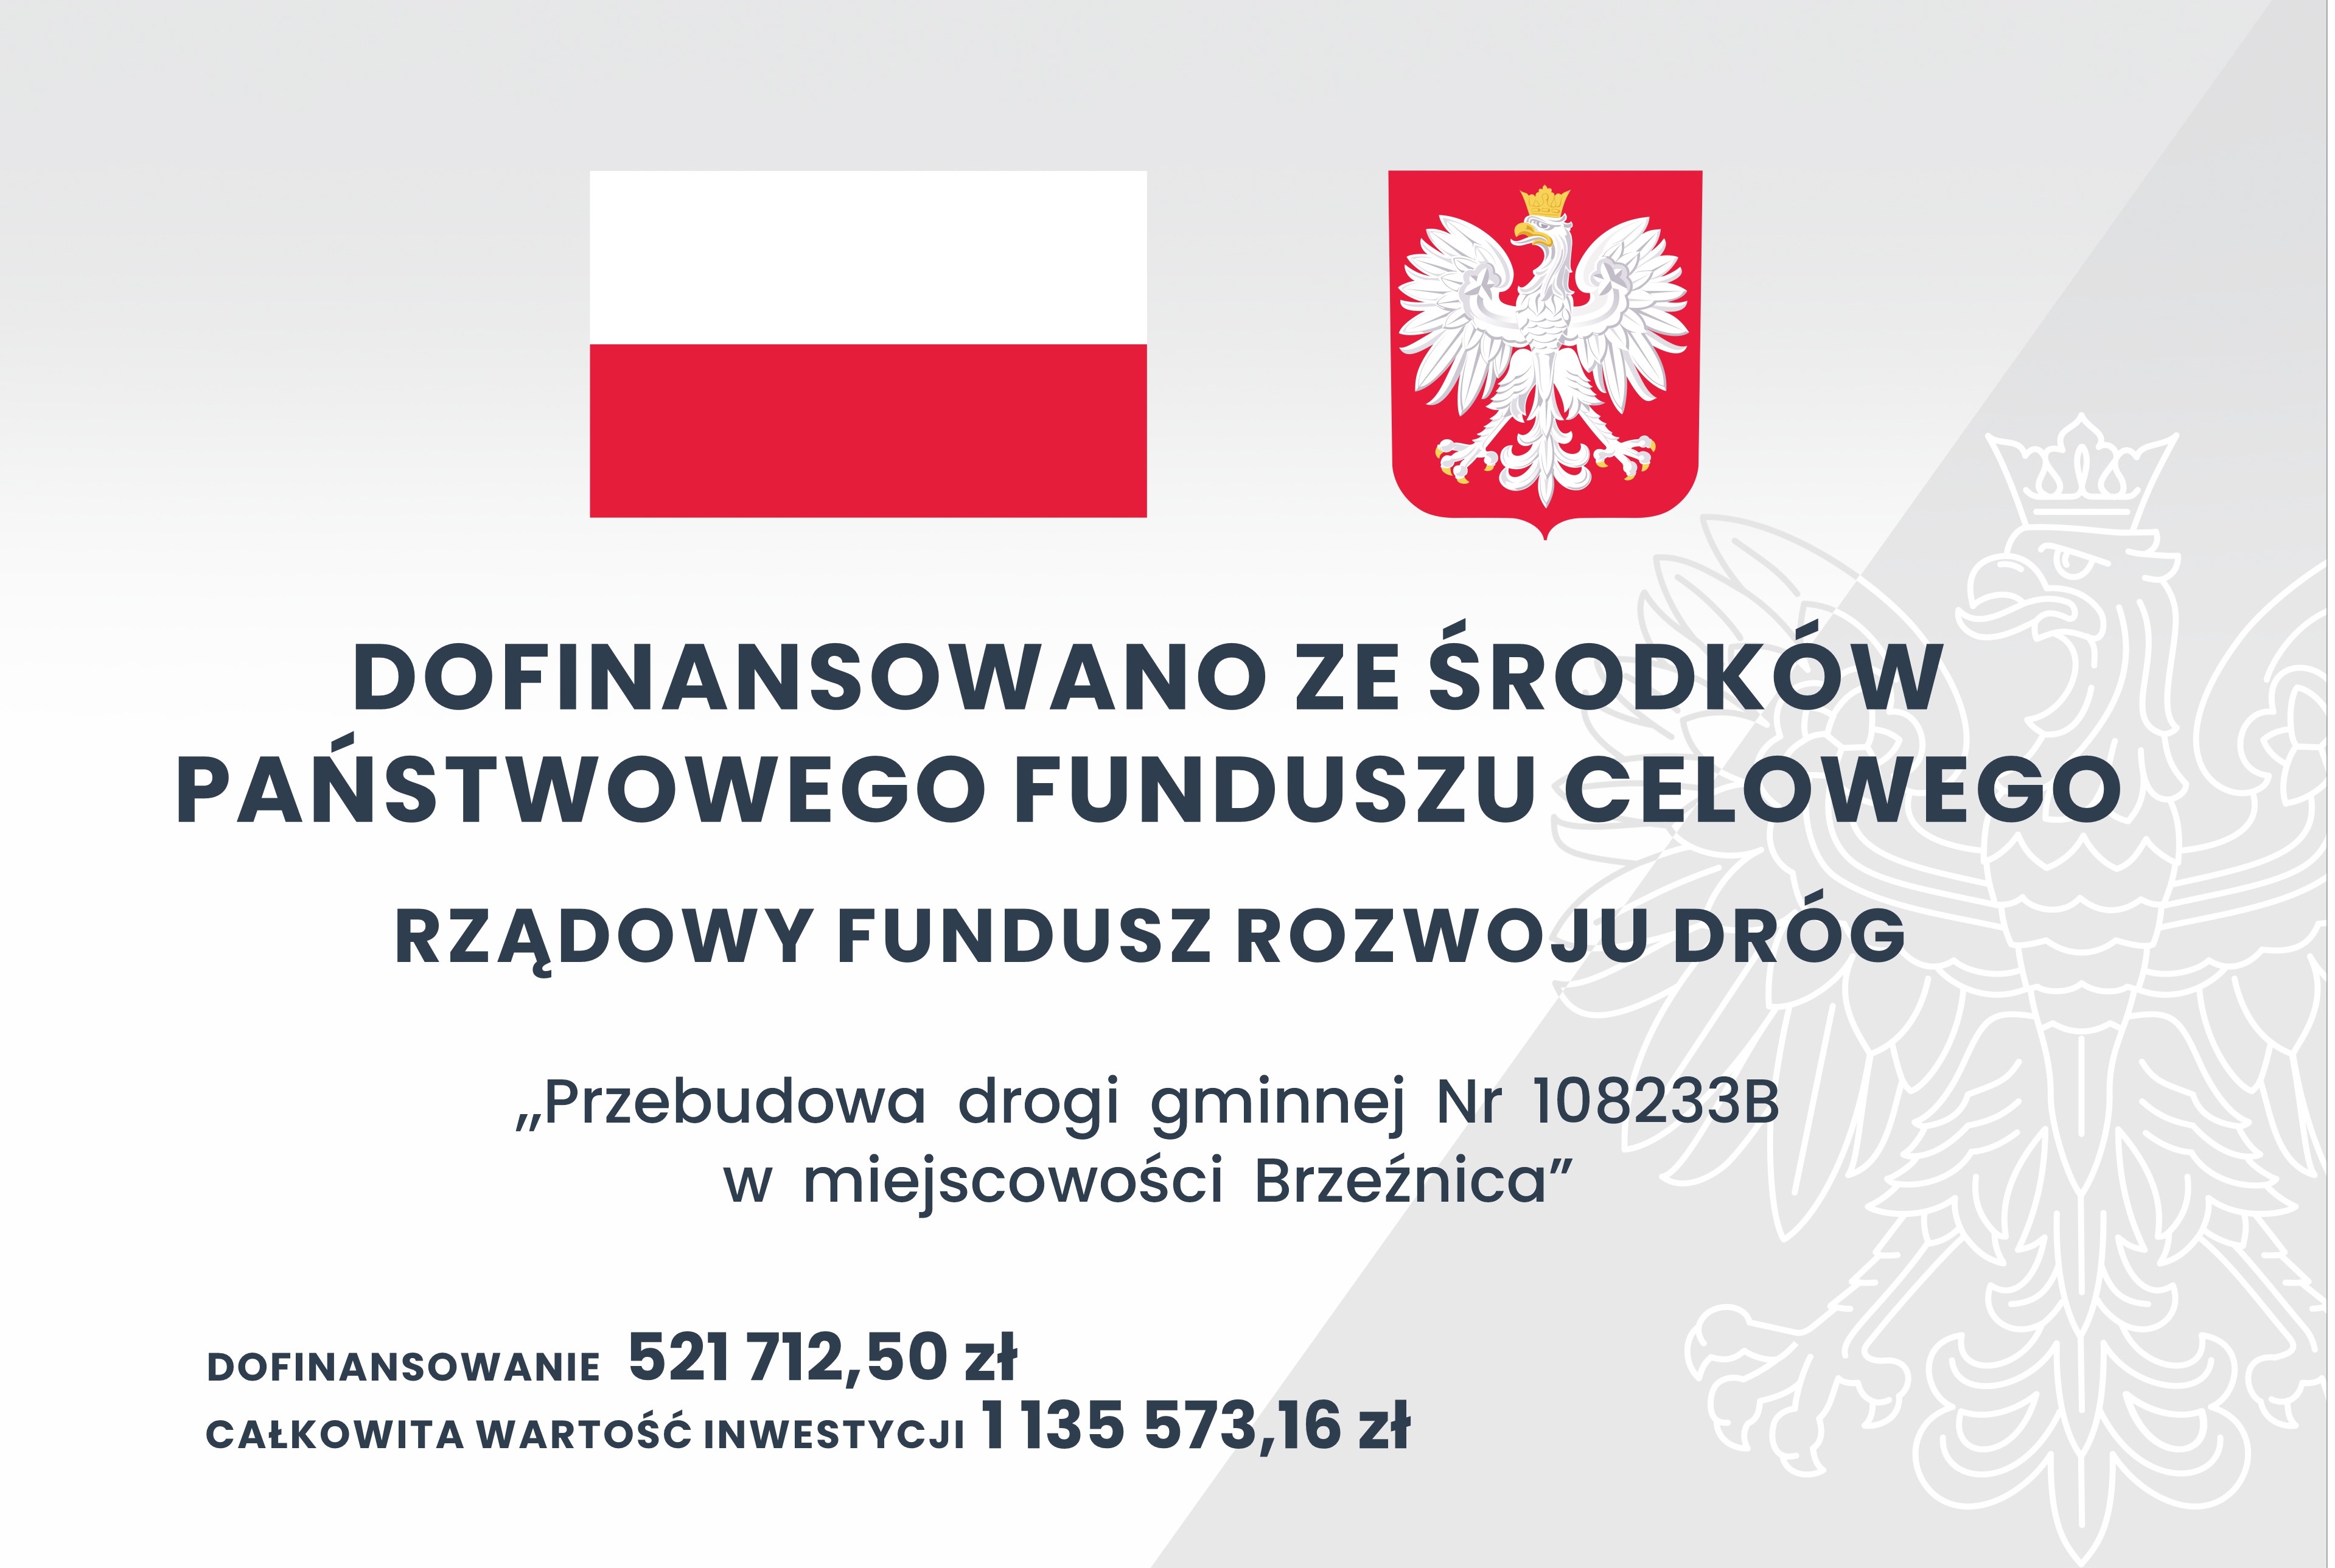 Na zdjęciu znajduję się tablica informacyjna, na której od góry umieszczona jest flaga czerwono – biała oraz godło Rzeczypospolitej Polski (orzeł biały na czerwonym tle) niżej znajduje się napis: Dofinansowano ze środków Państwowego Funduszu Celowego Rządowy Fundusz Rozwoju Dróg „Przebudowa drogi gminnej Nr 108233B w miejscowości Brzeźnica”, dofinansowanie: 521 712,50 zł całkowita wartość inwestycji 1 135 573,16 zł.